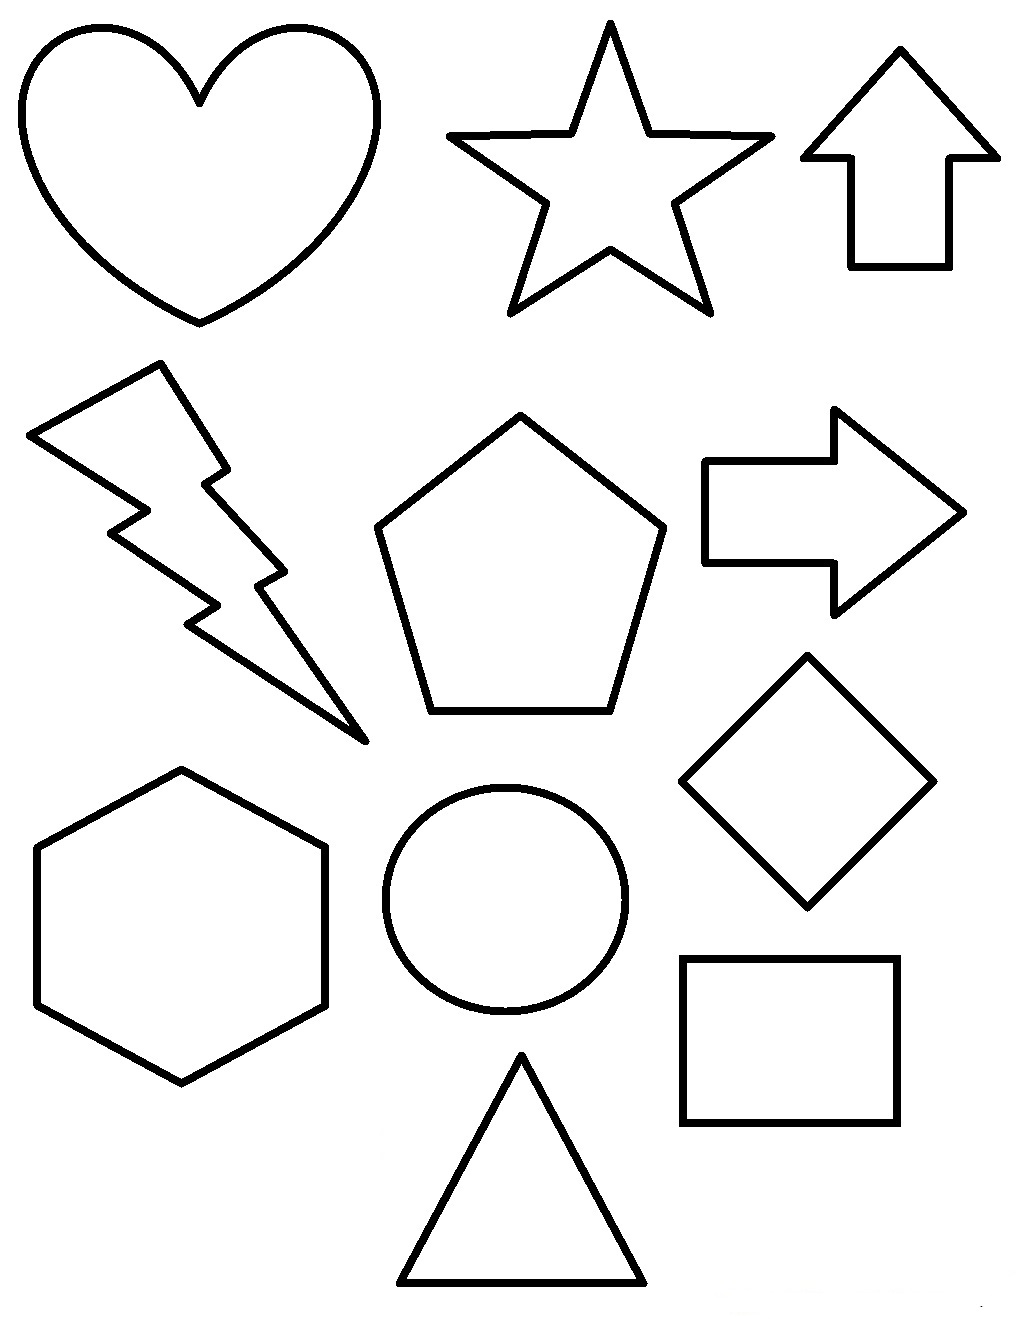 Раскрашенные картинки из геометрических фигур для детей (картинки, пособия)